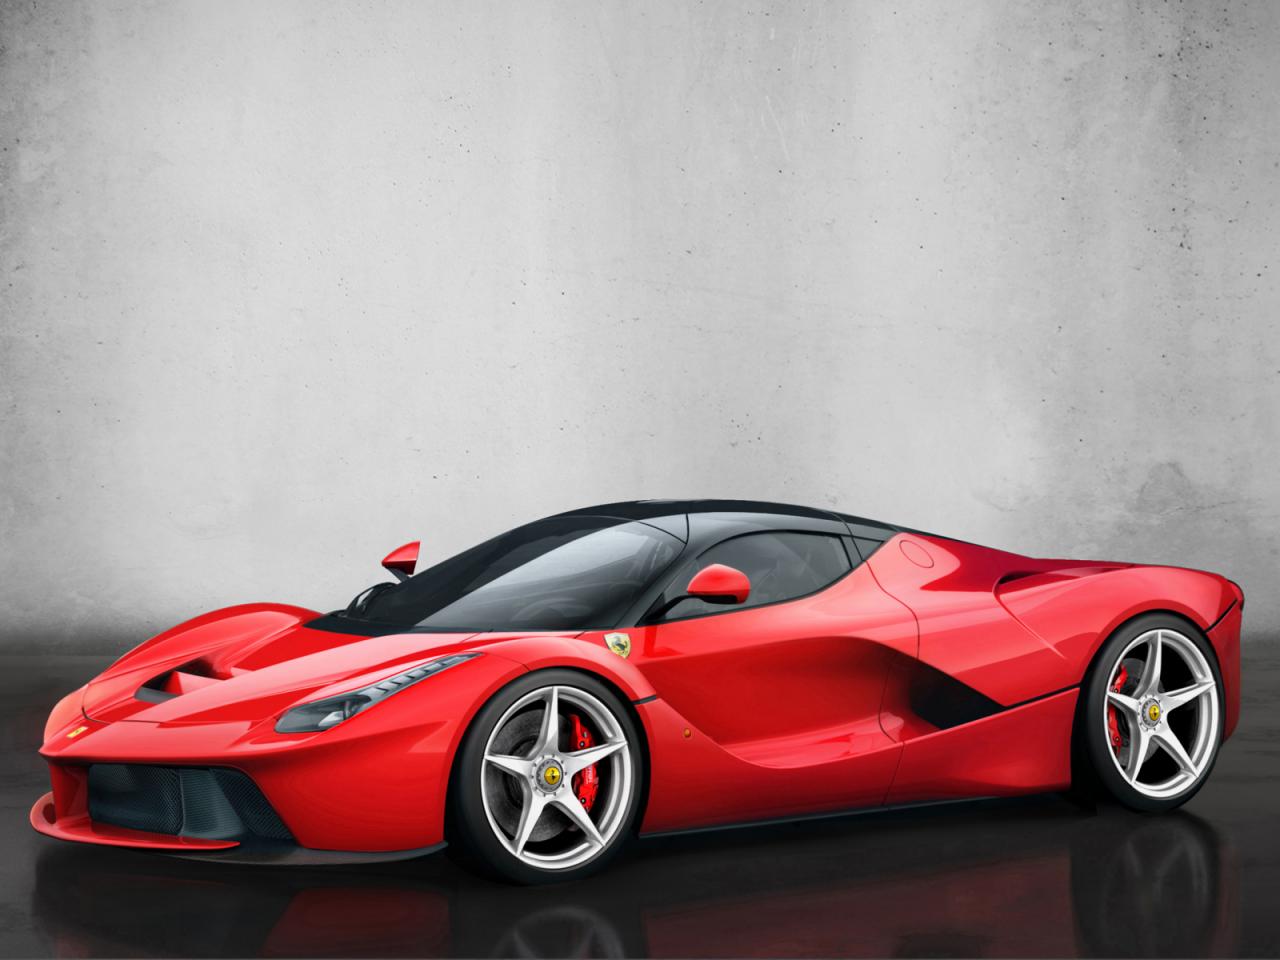 LaFerrari - Siêu xe nhanh nhất, mạnh nhất và đắt nhất của Ferrari đã "cháy hàng" 1